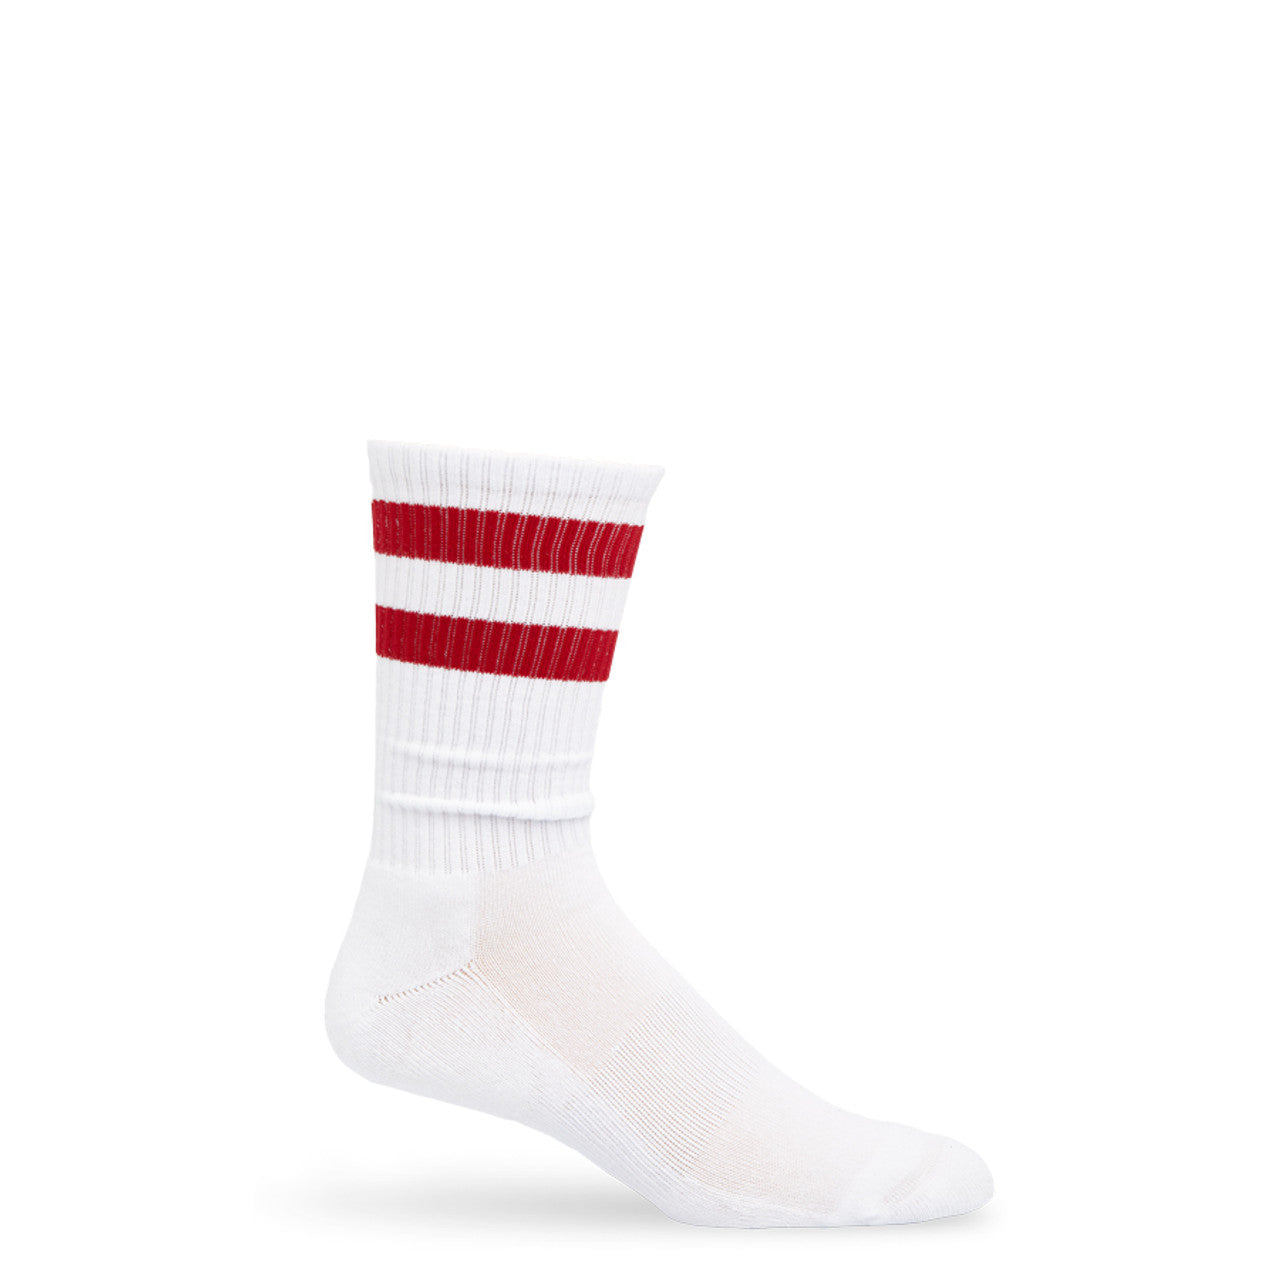 DeadSoxy Crimson Retro Casual Socks